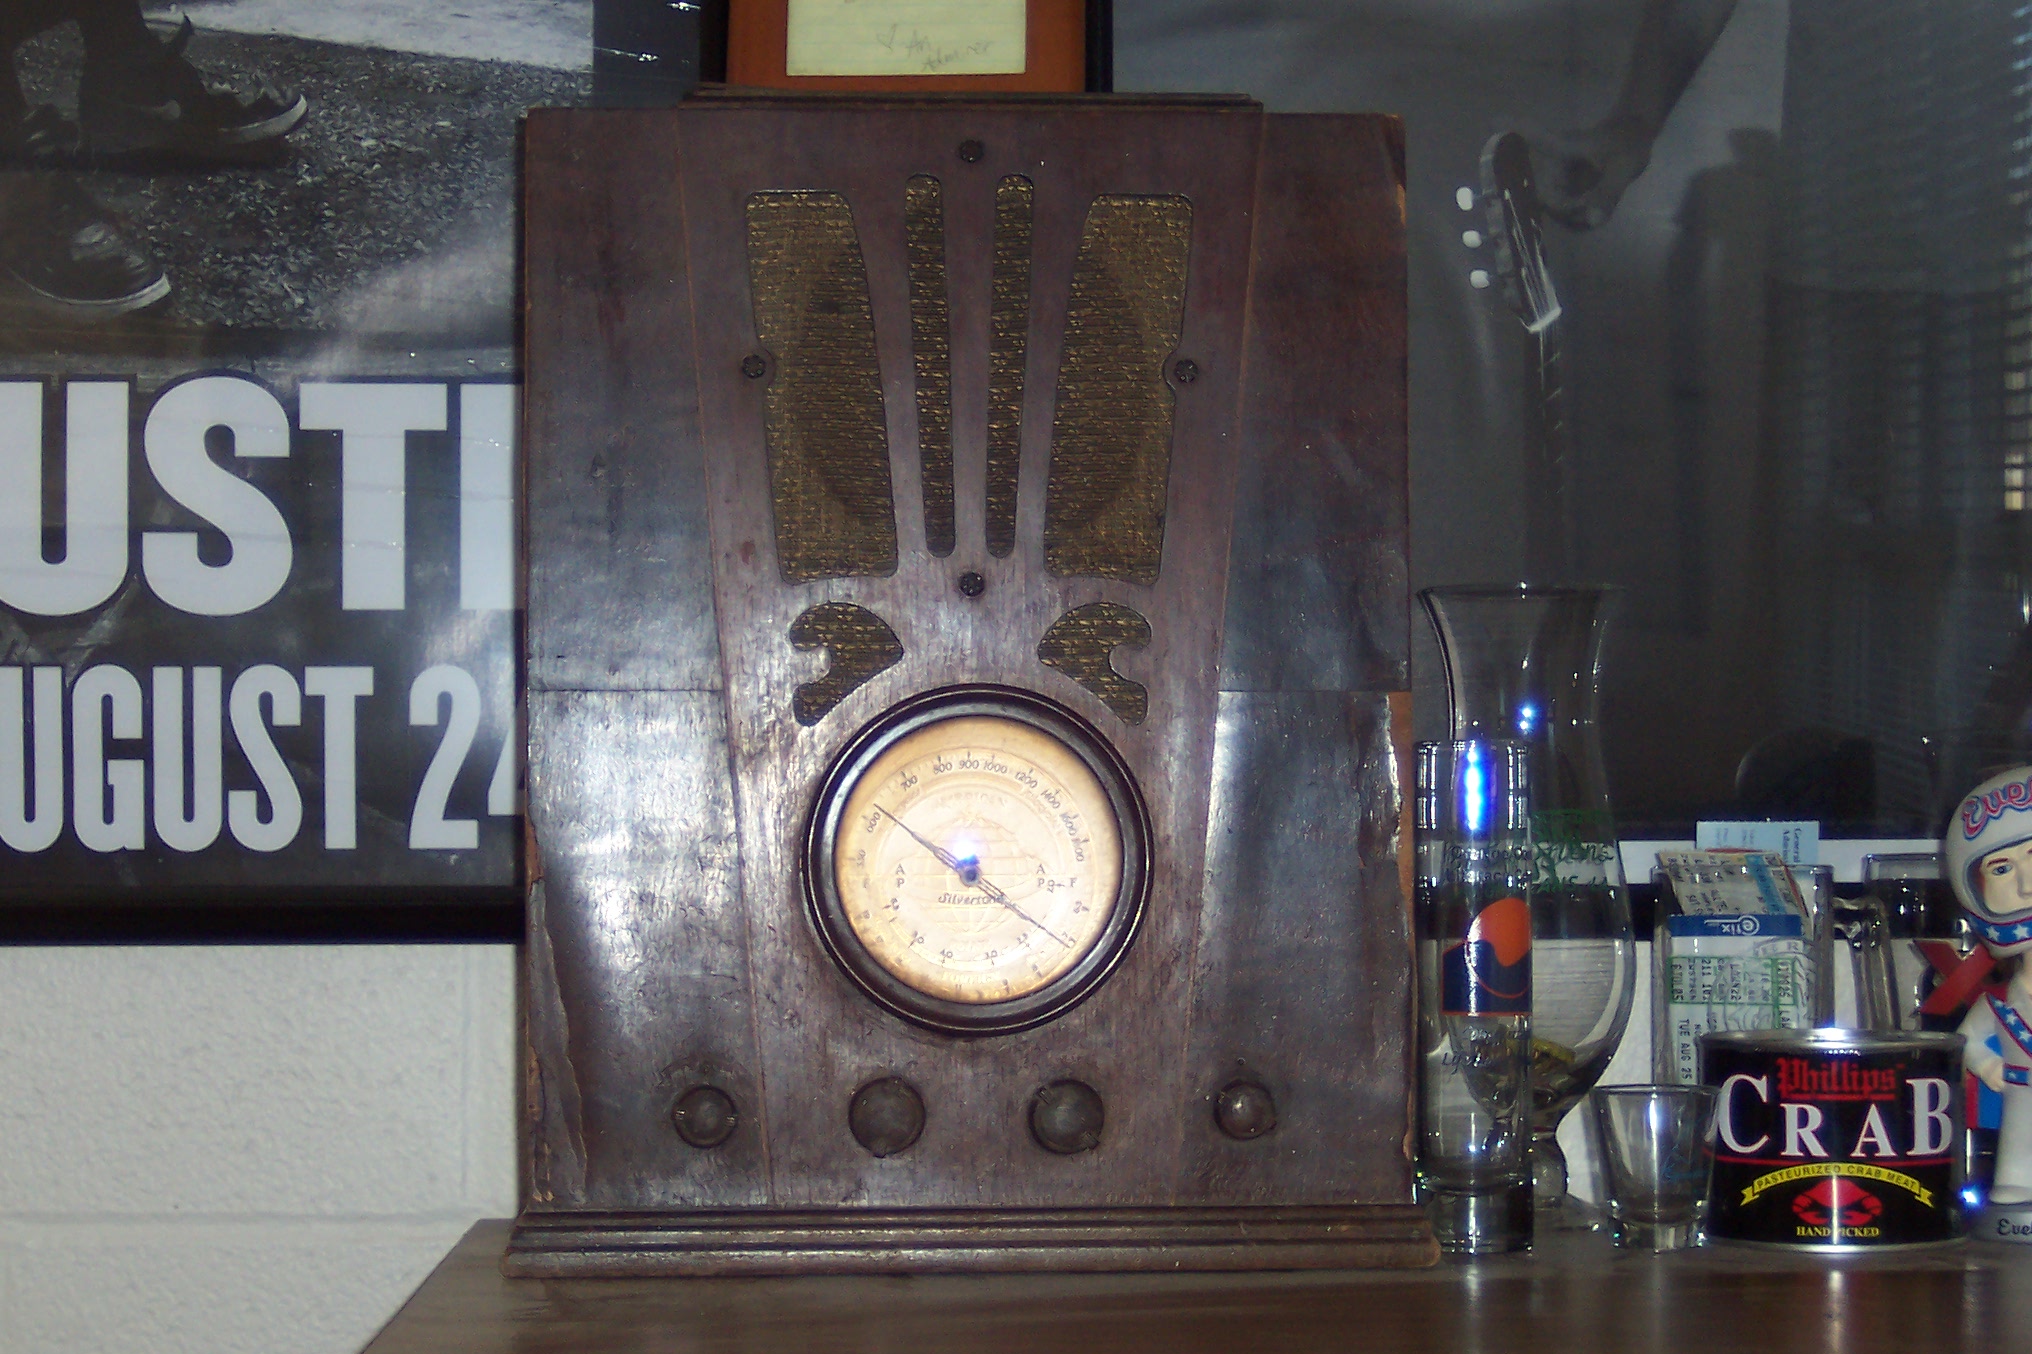 Old Radios